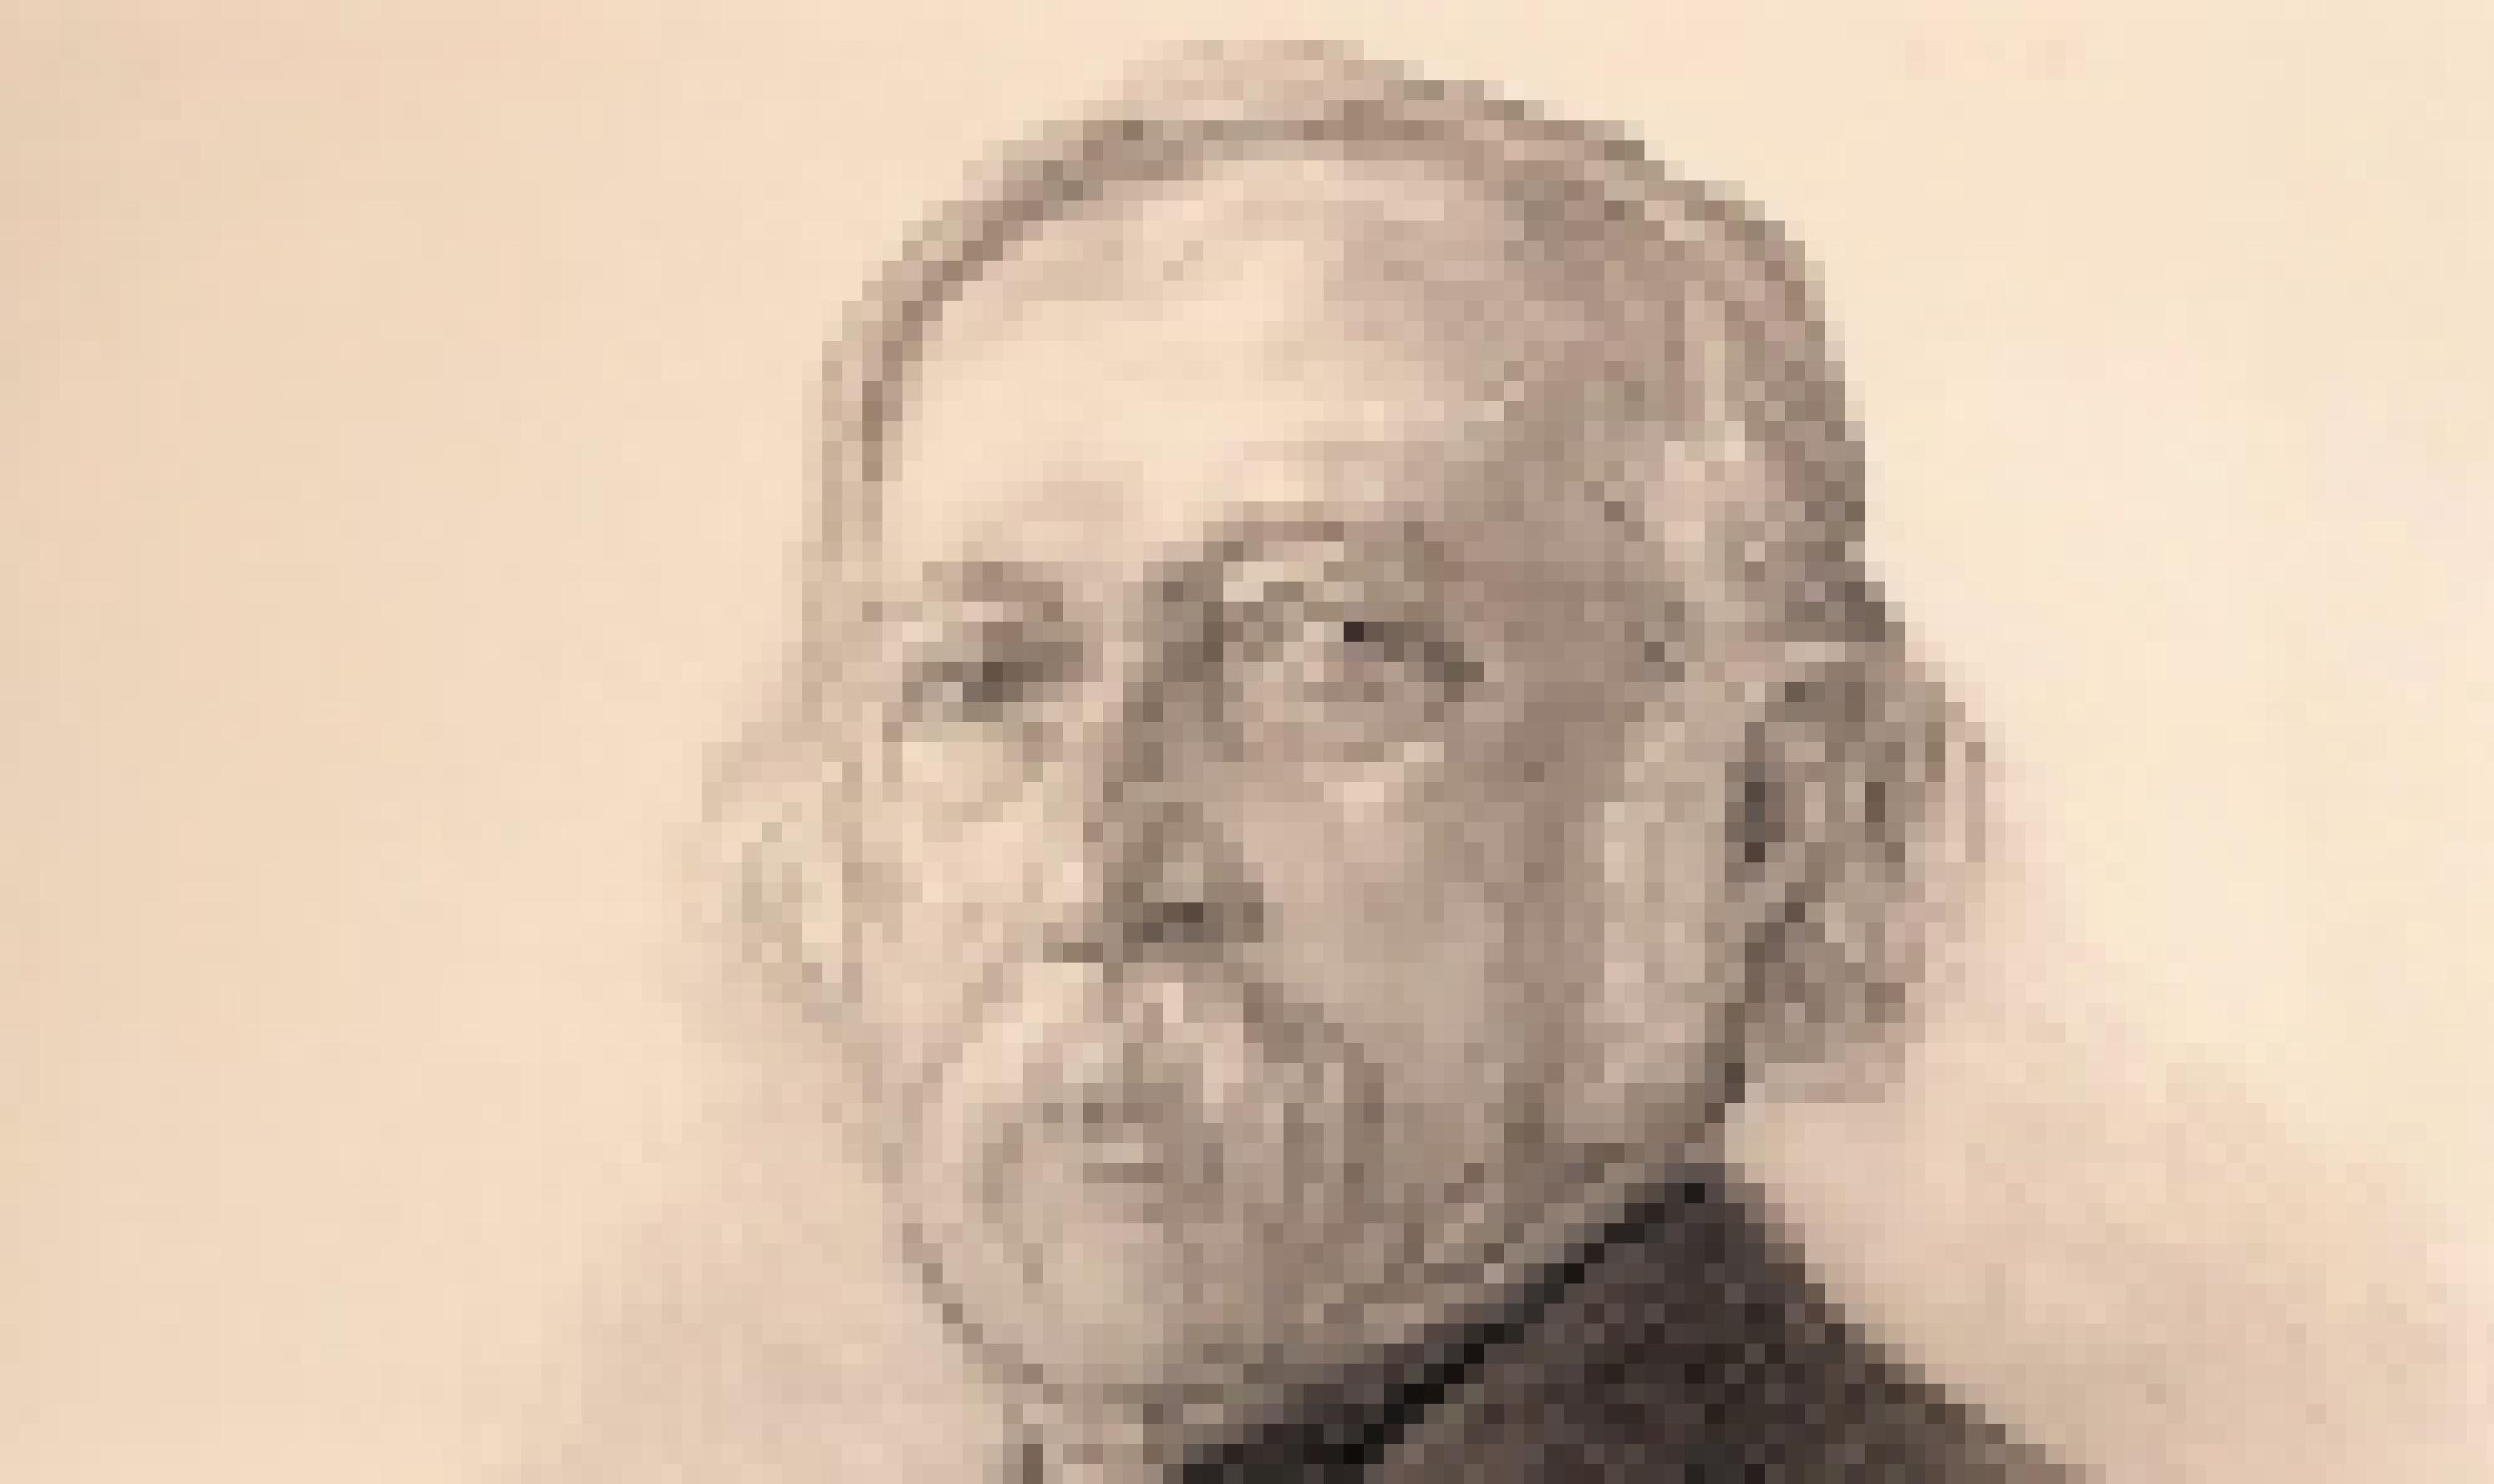 Porträt von Theodor Fontane, lithografiert 1896 von Max Liebermann